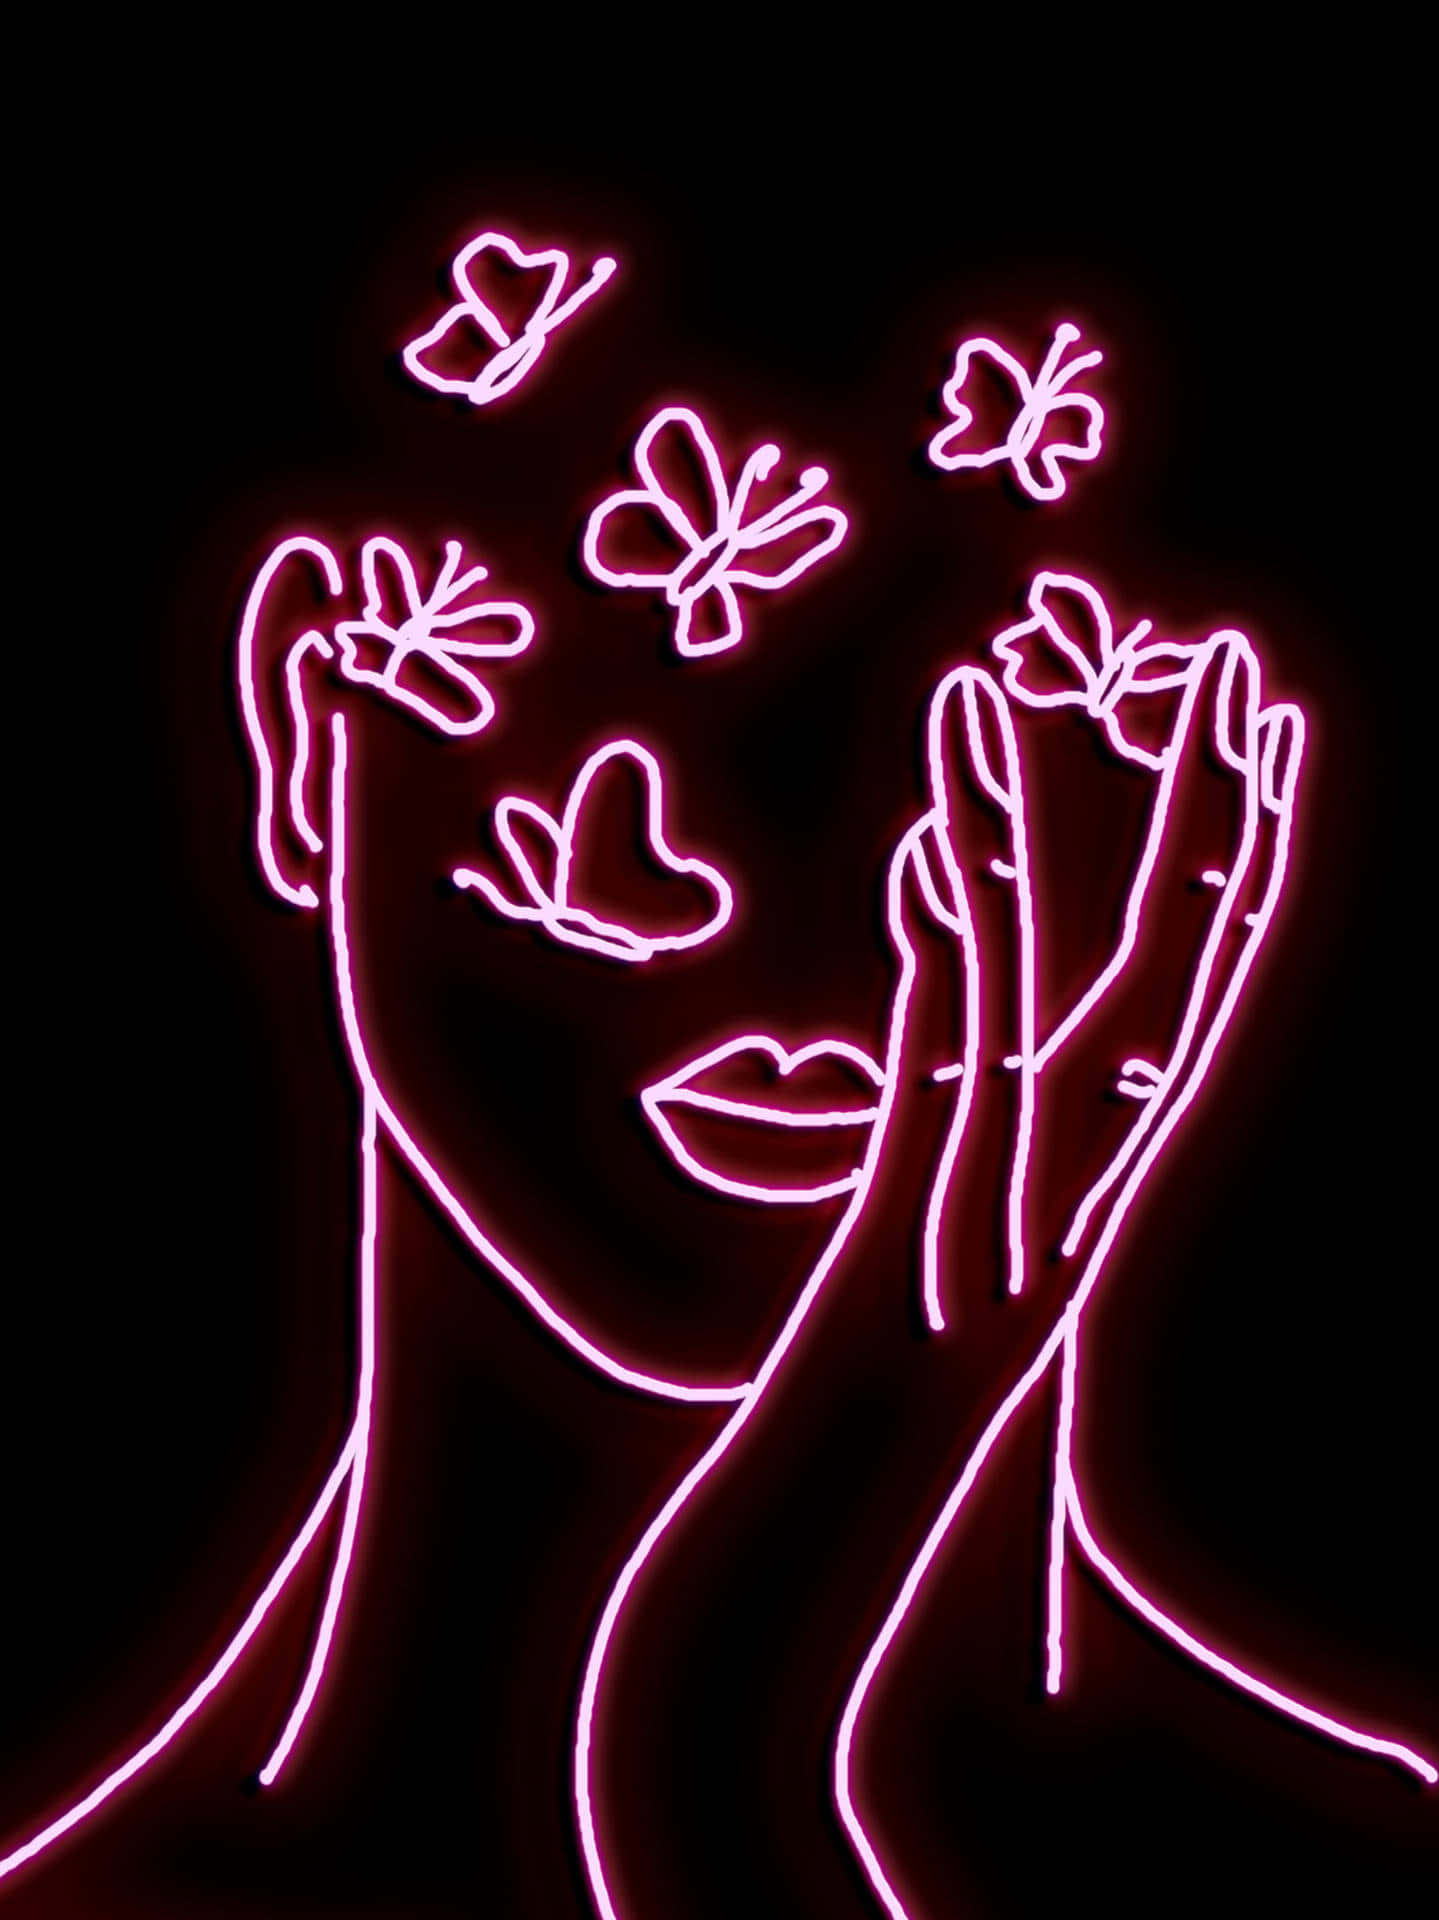 Immaginein Stile Line Art Neon Con Estetica Rosa